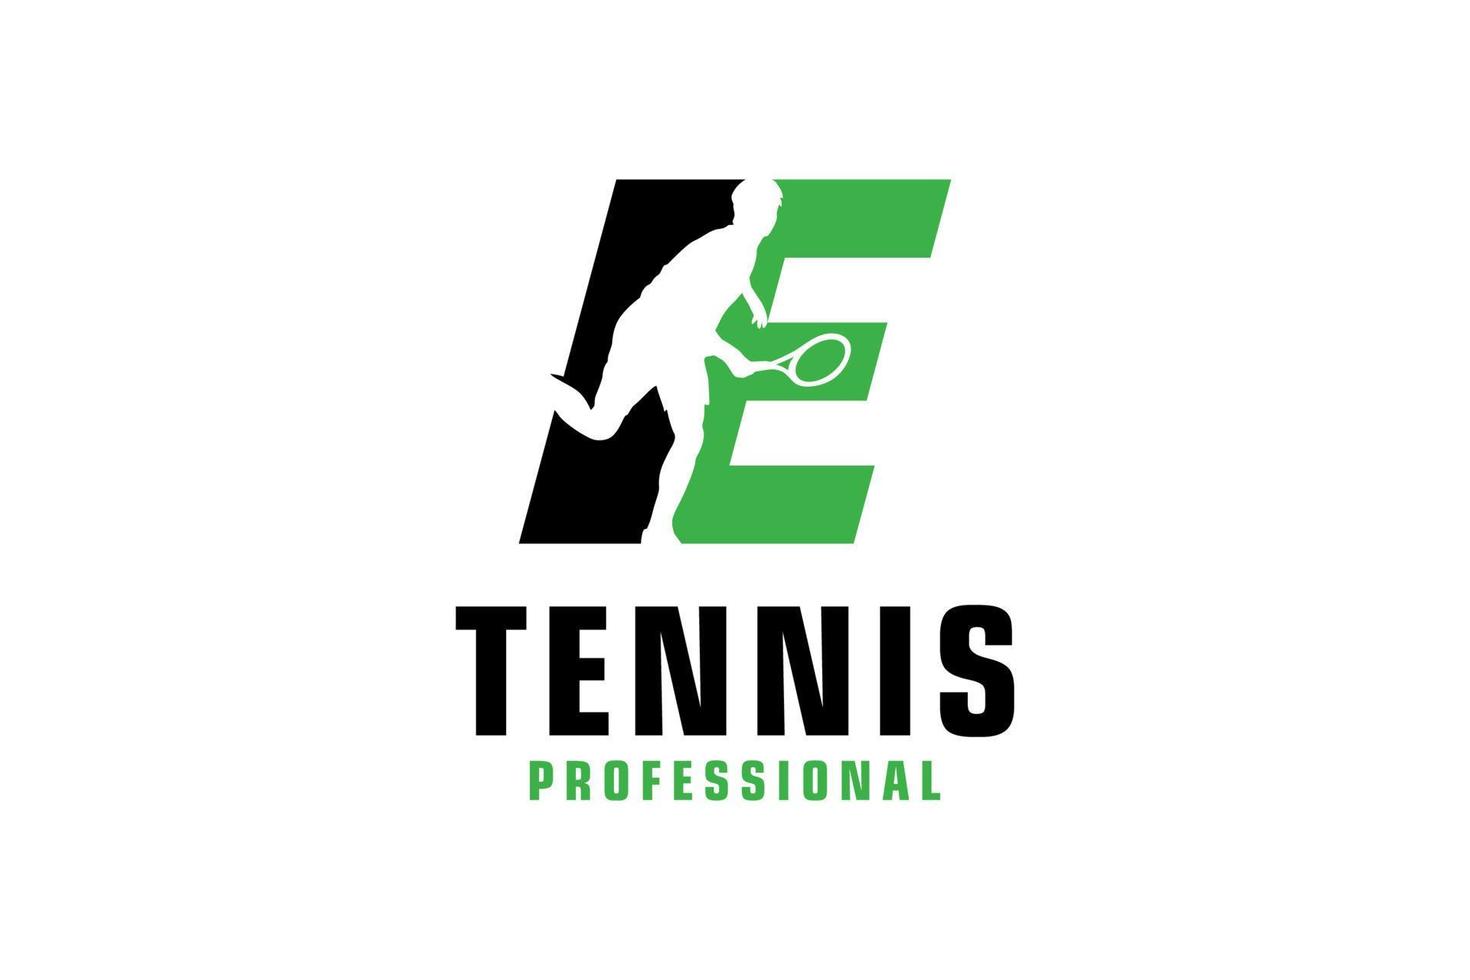 buchstabe e mit tennisspieler-silhouette-logo-design. Vektordesign-Vorlagenelemente für Sportteams oder Corporate Identity. vektor